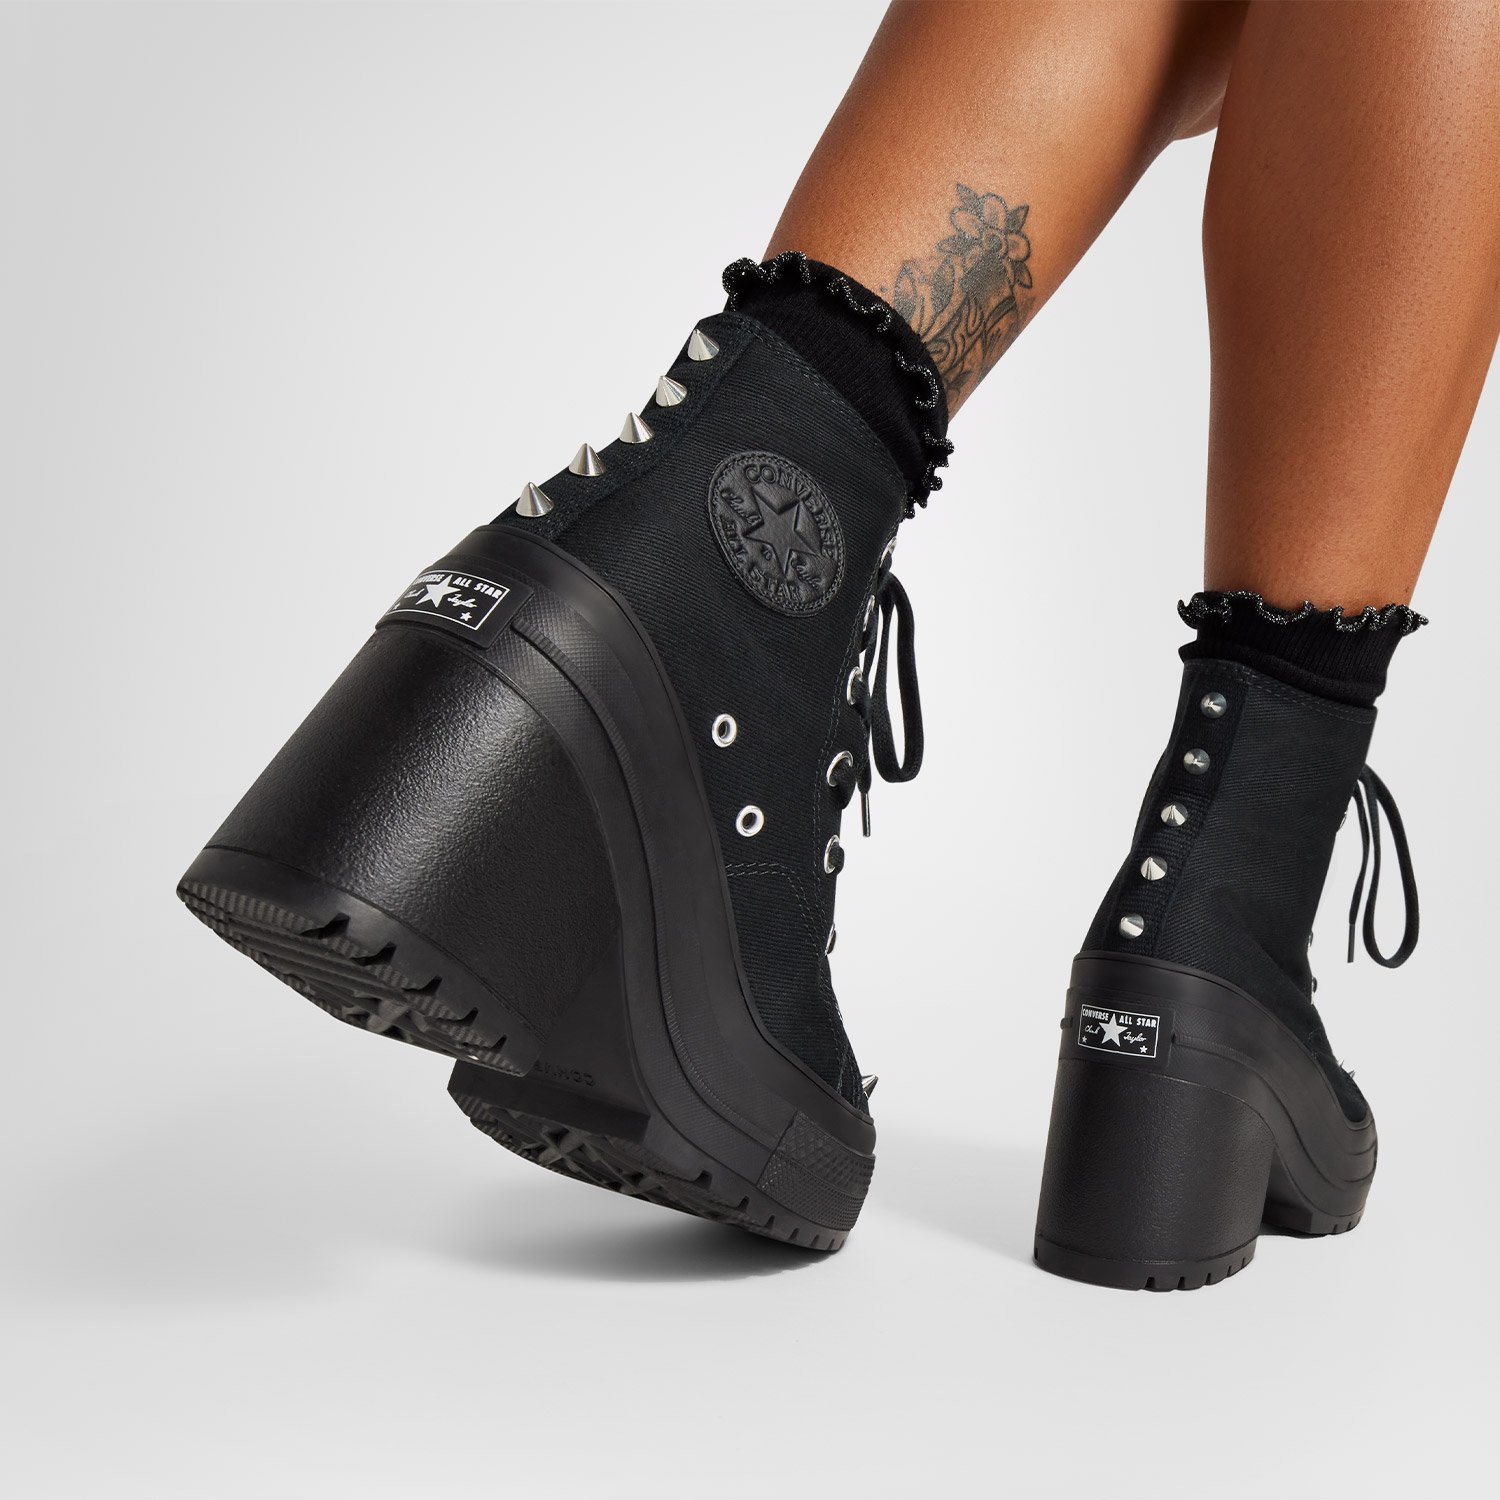 Converse Chuck 70 De Luxe Heel Studded Kadın Siyah Platform Sneaker